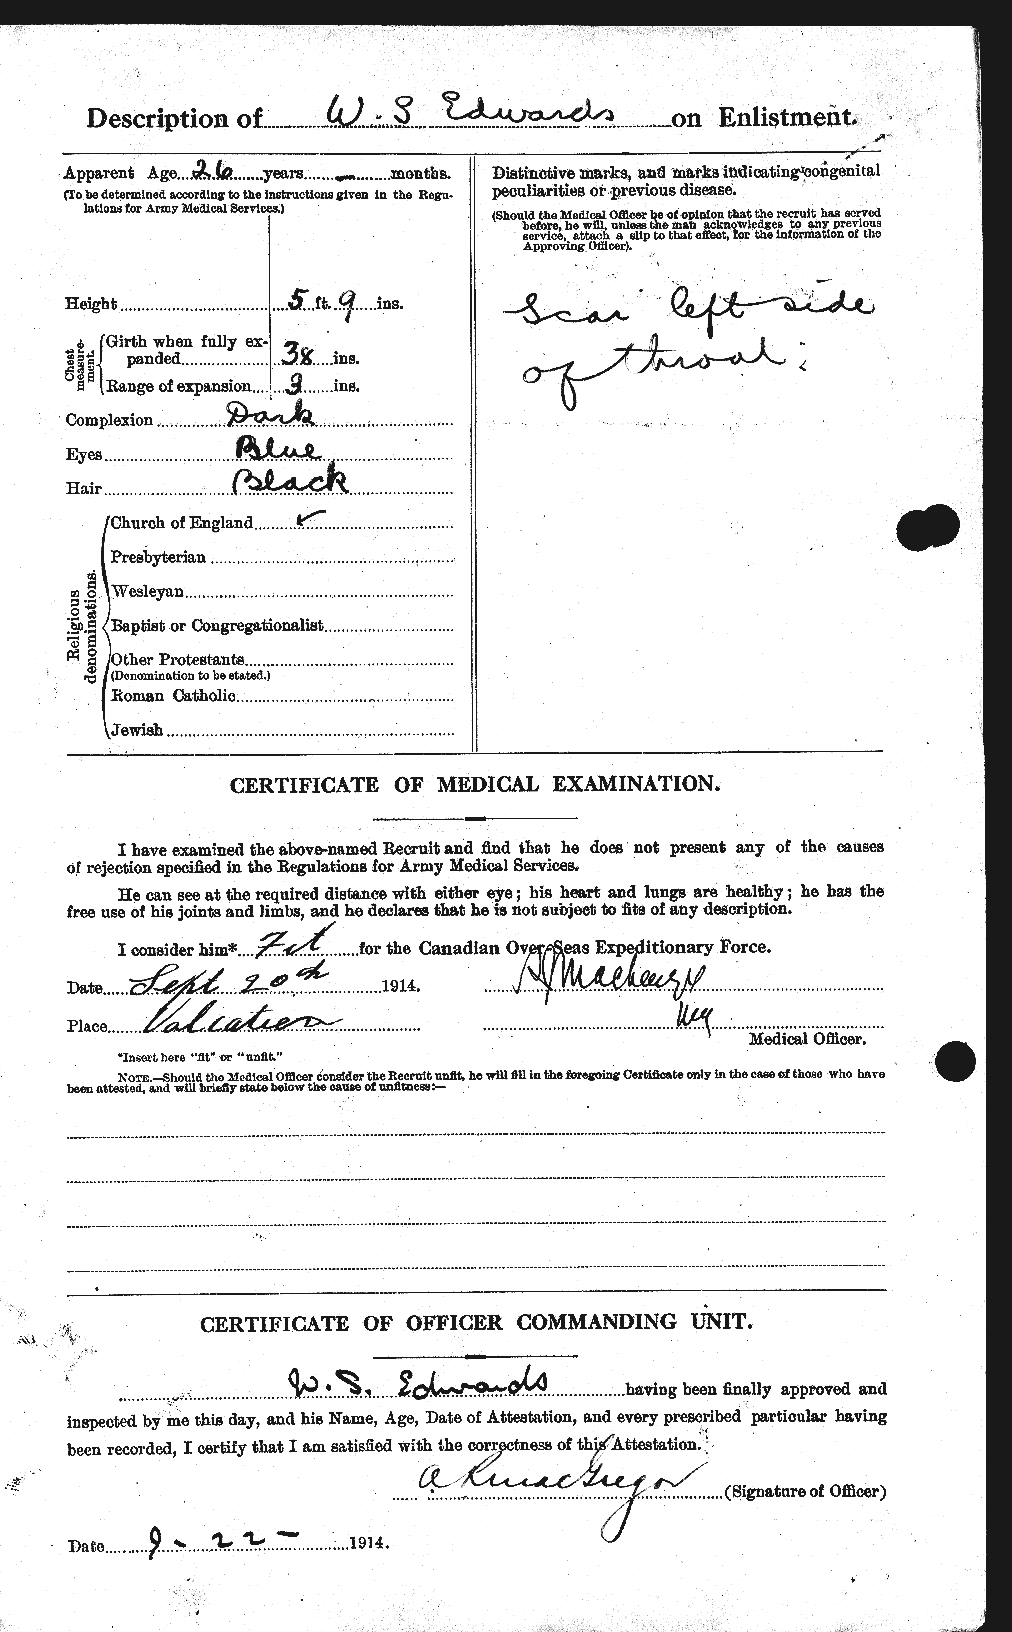 Dossiers du Personnel de la Première Guerre mondiale - CEC 310378b